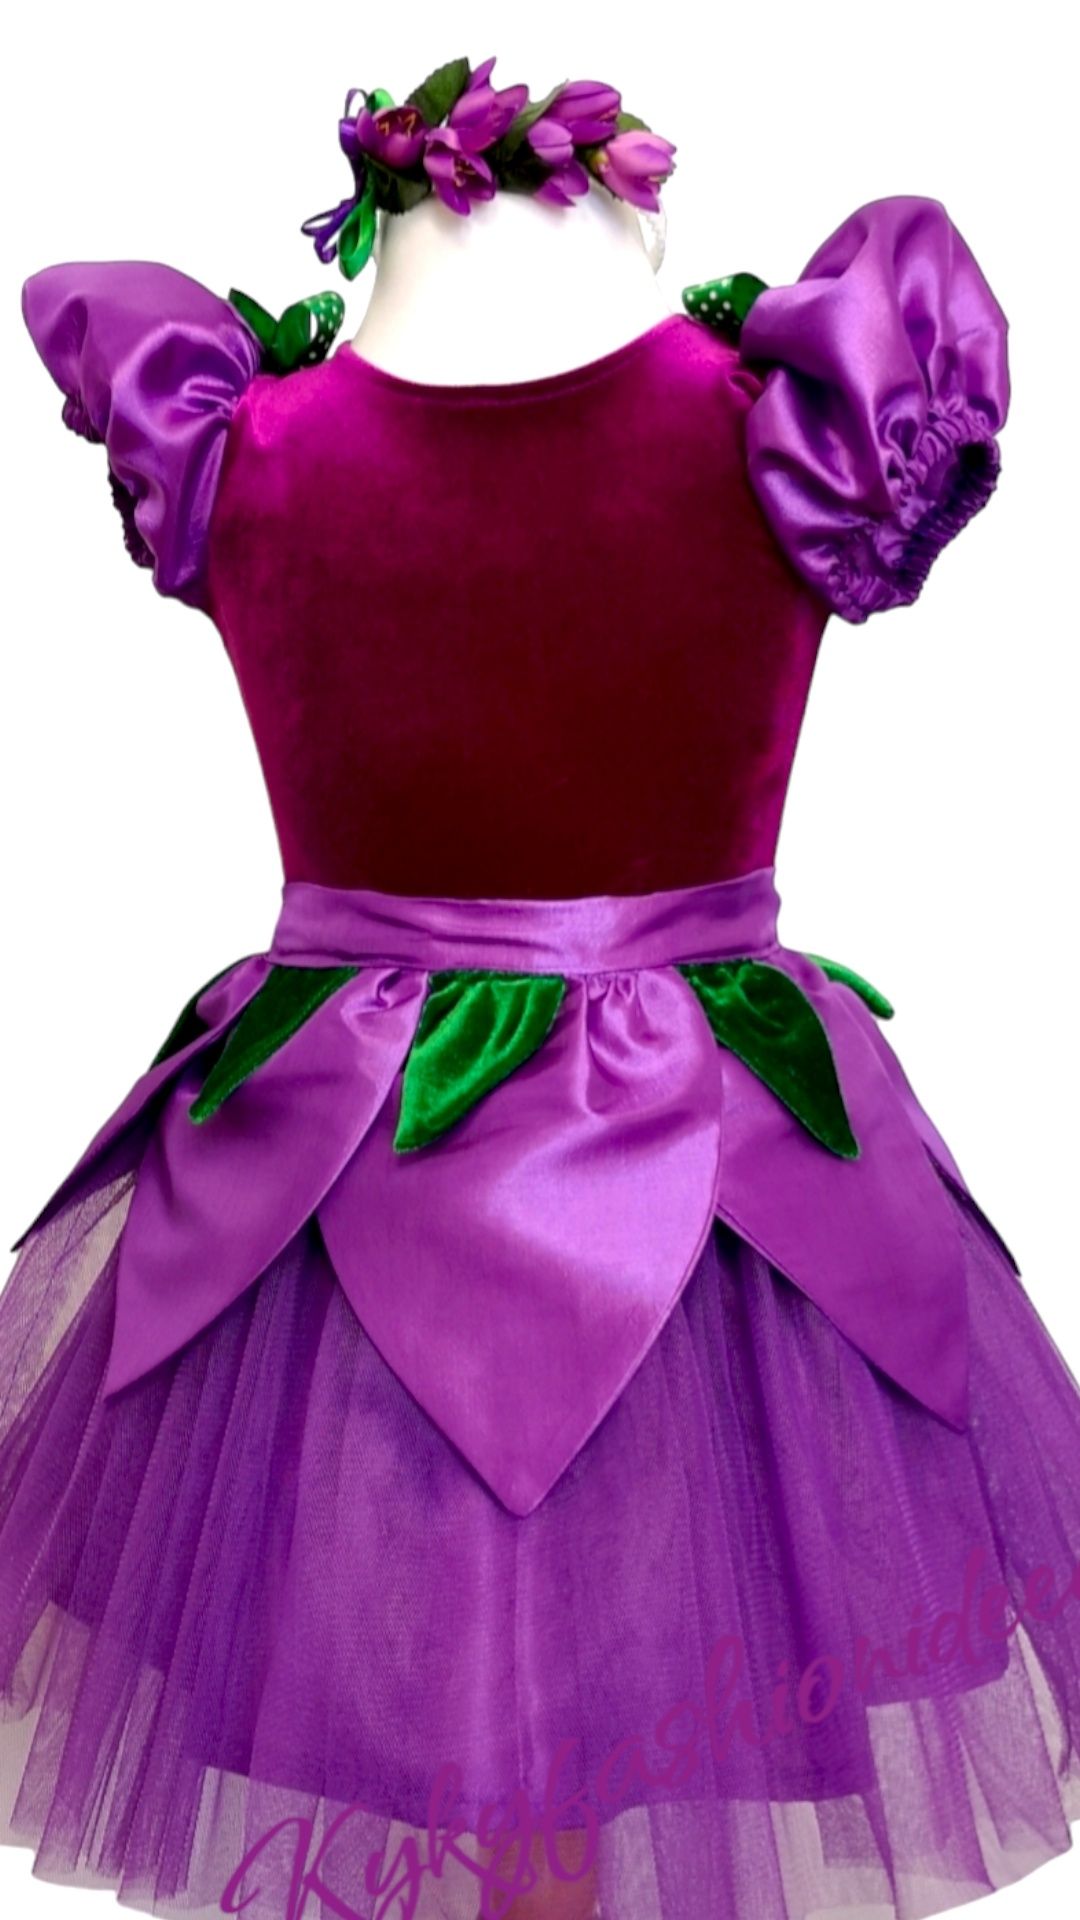 Costum violetă brândușa viorea rochiță mov serbare made în România